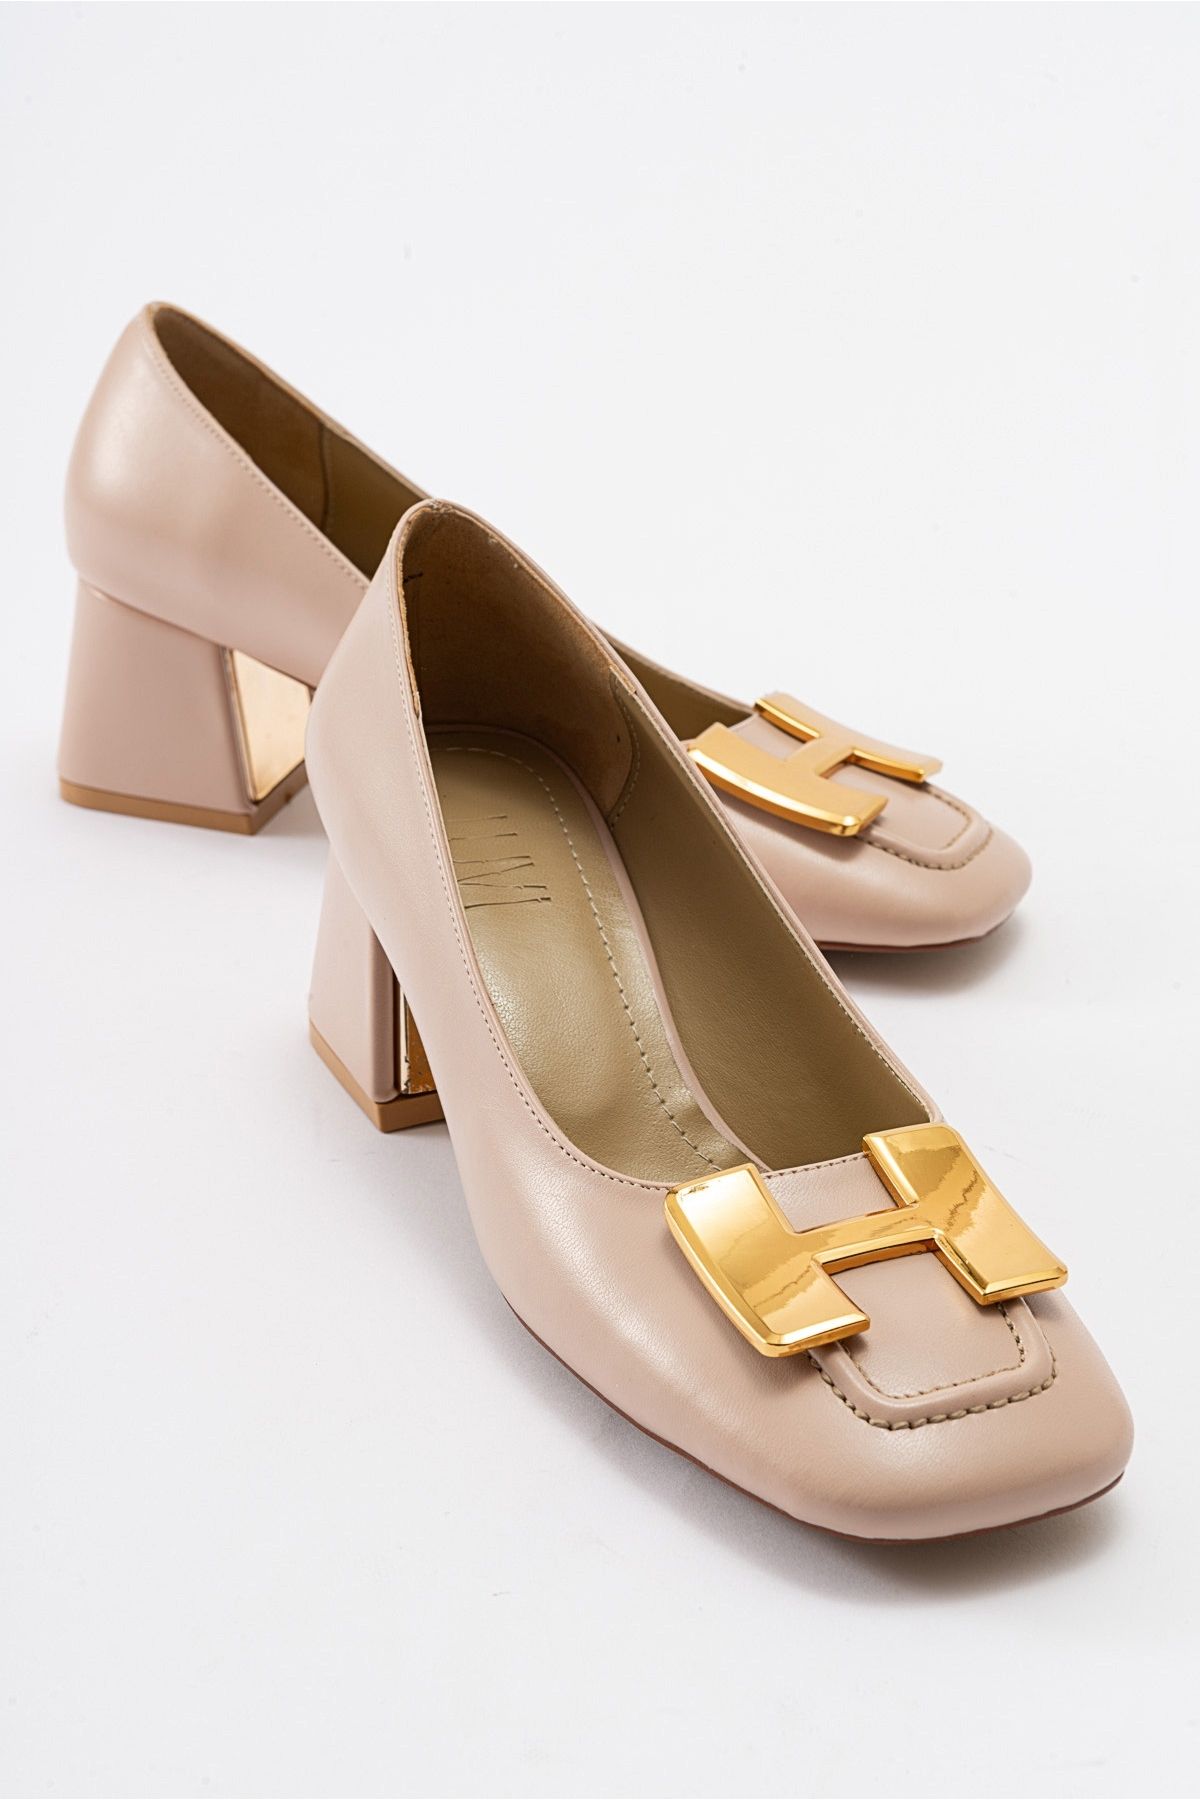 luvishoes ELOİS Bej-Altın Tokalı Kadın Topuklu Ayakkabı